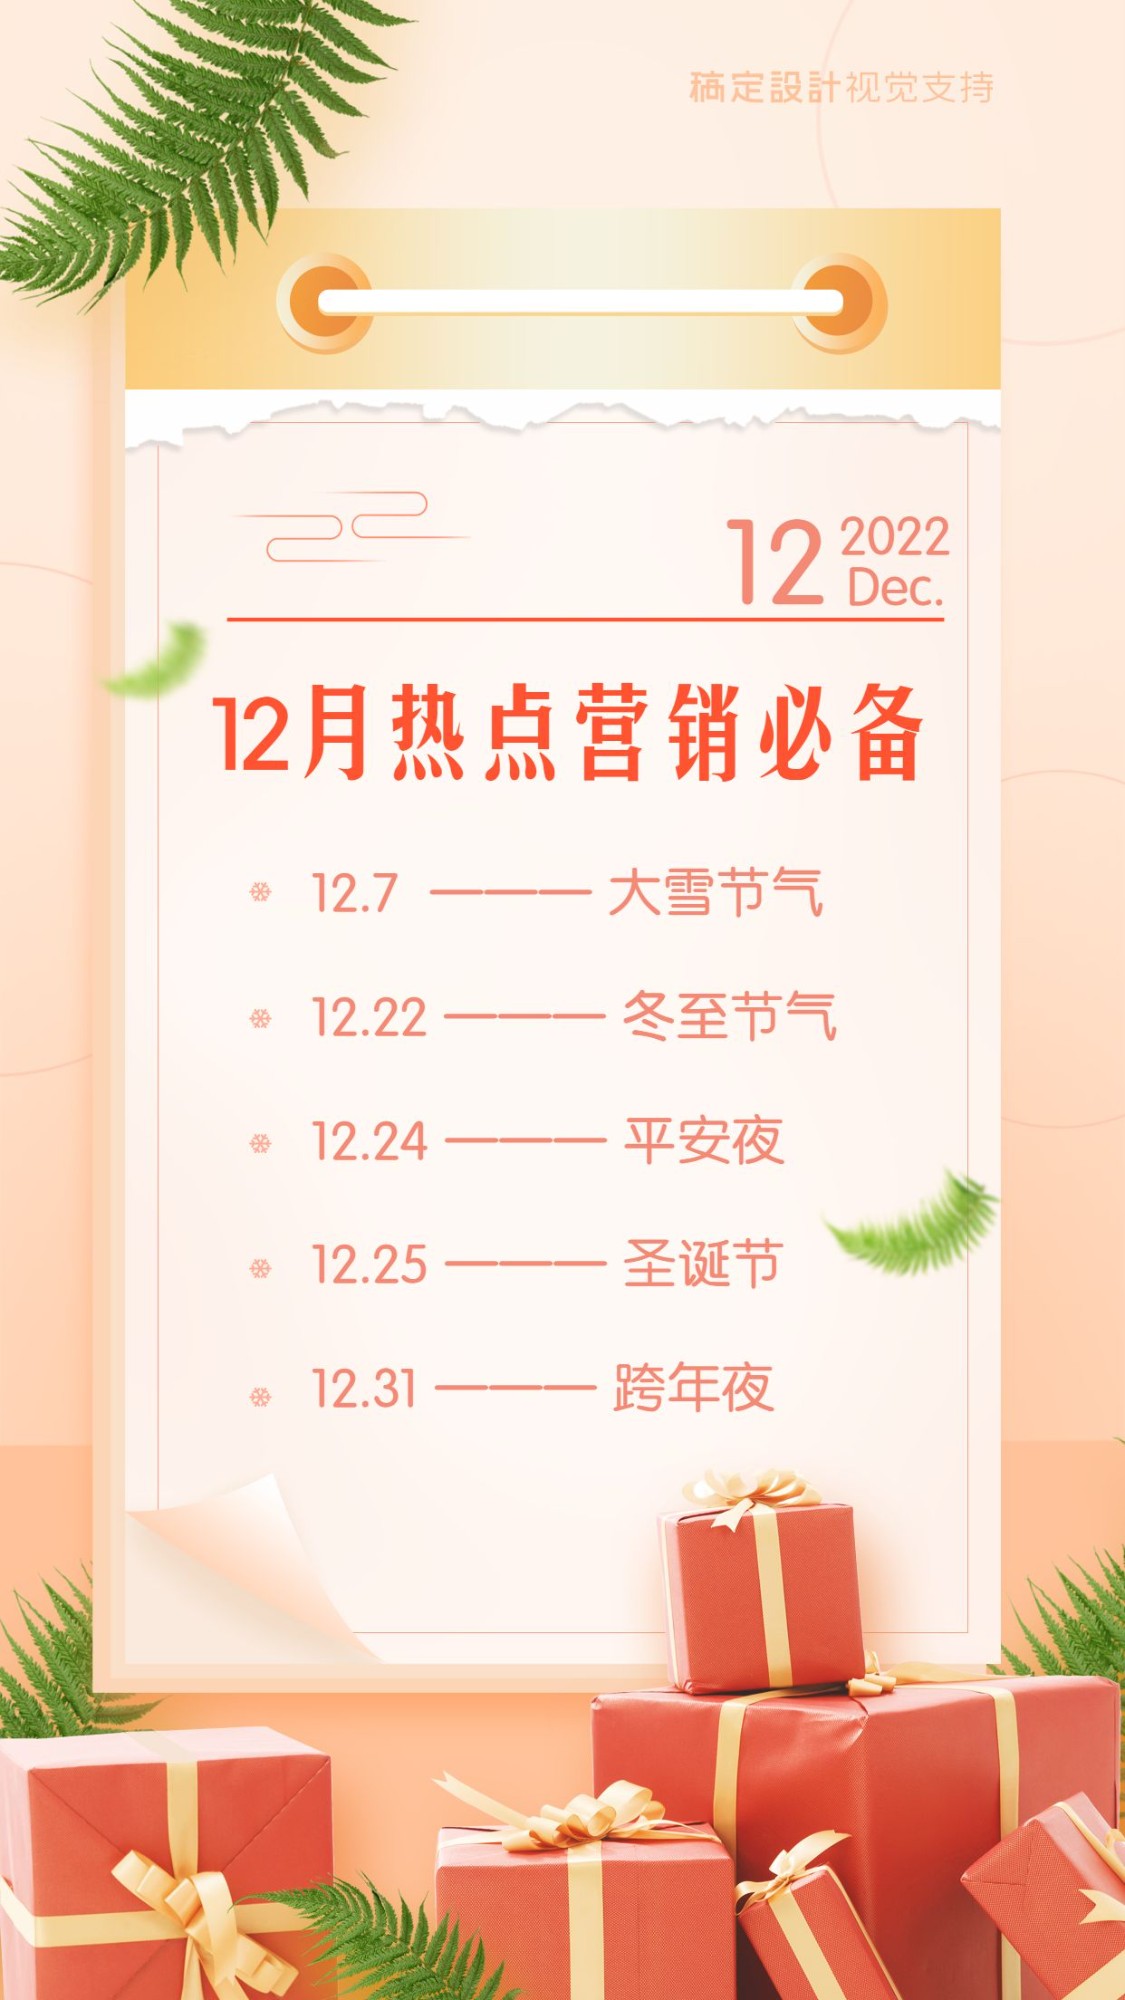 12月营销热点日历提醒通知